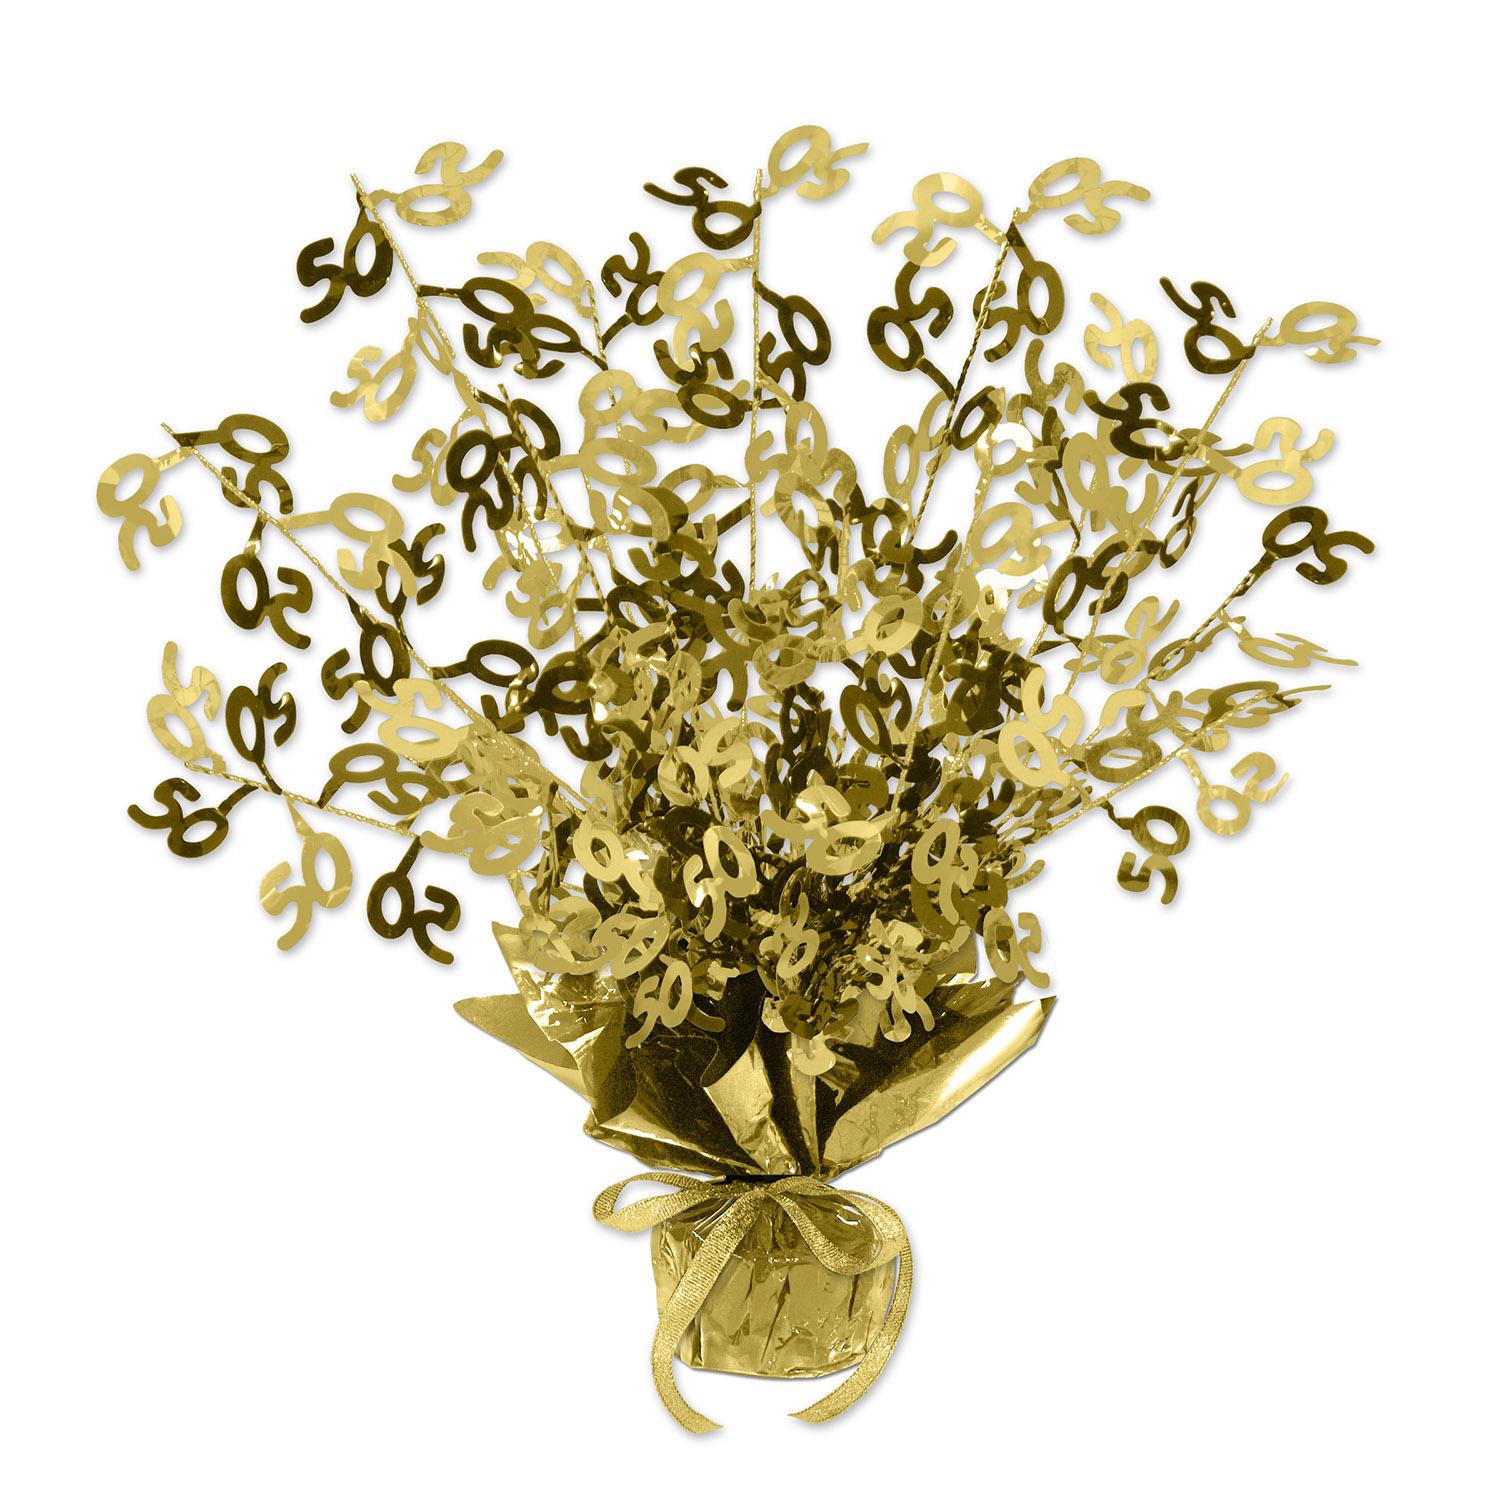 Beistle 50th Anniversary Gleam 'N Burst Centerpiece - gold